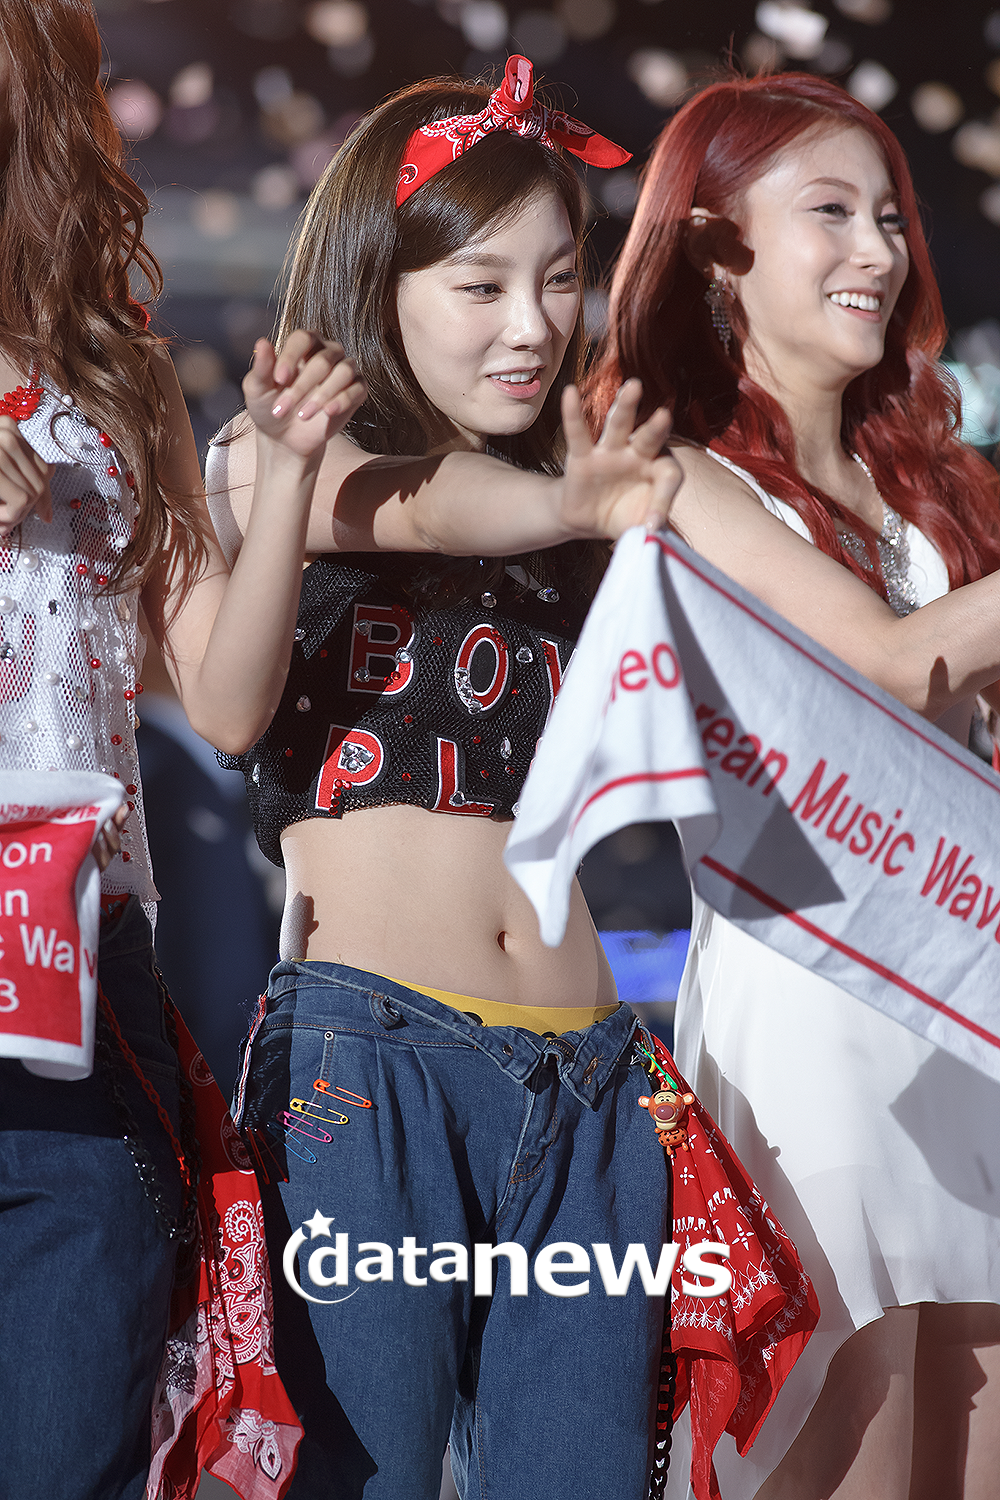 [PIC][01-09-2013]Hình ảnh mới nhất từ "Incheon Korean Music Wave 2013" của SNSD và MC YulTi vào tối nay - Page 2 234F734C52238E3015136F